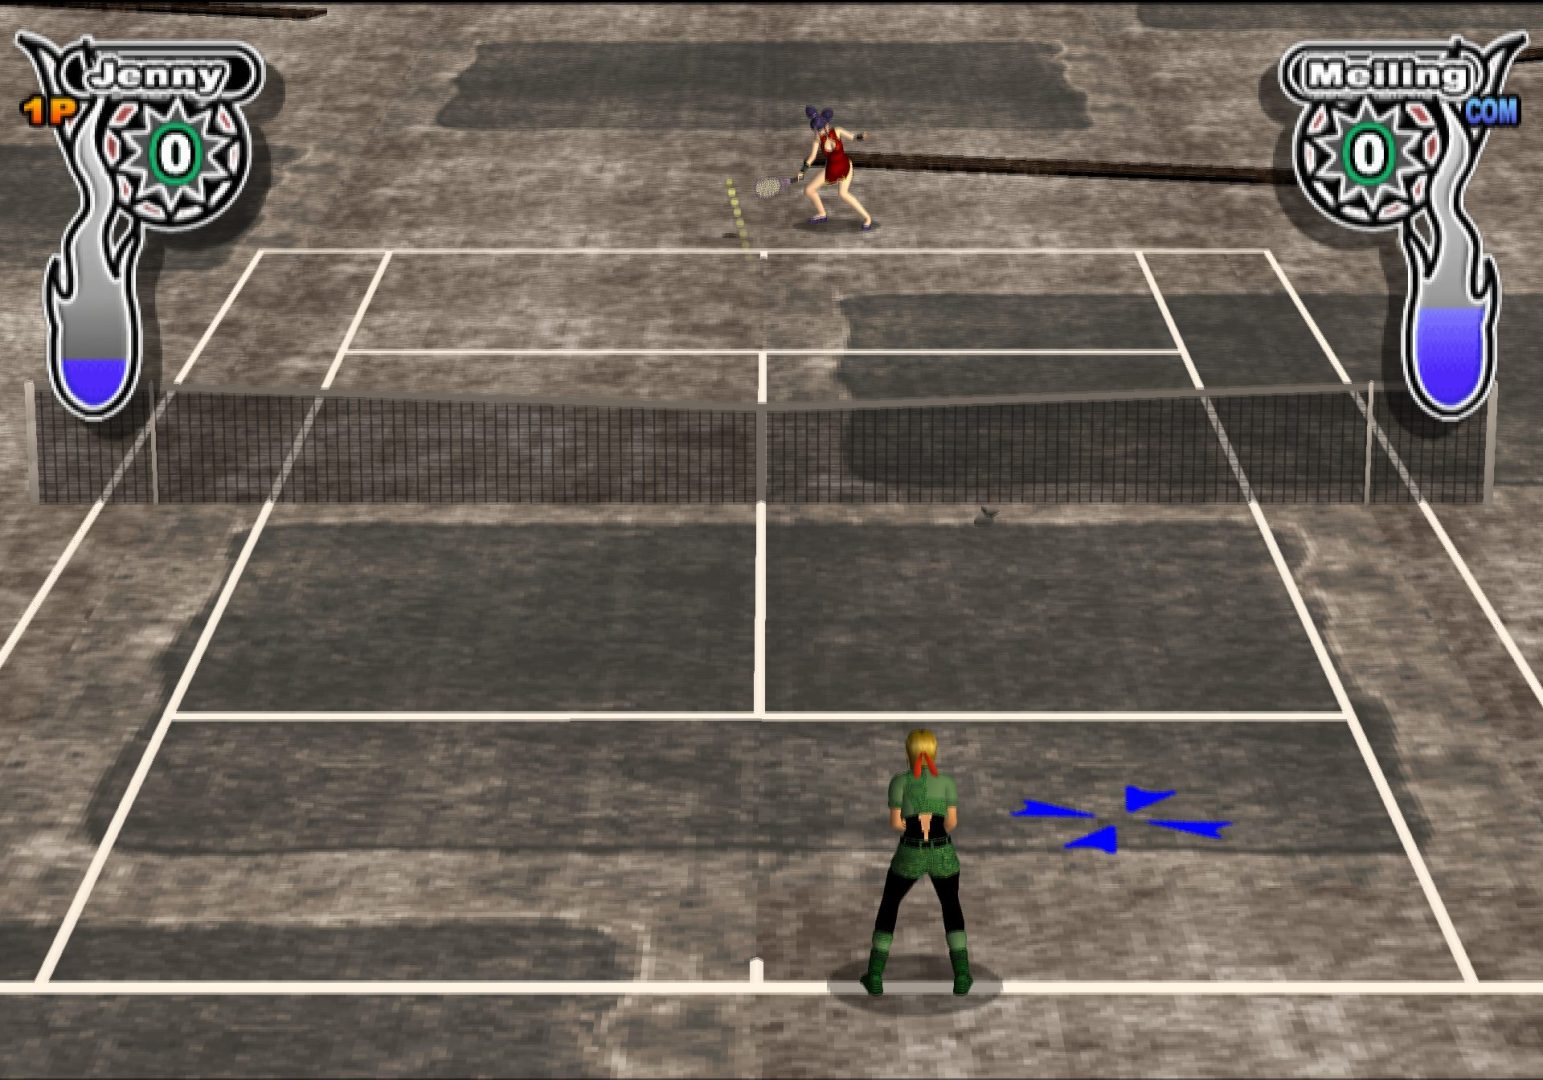 Simple 2000 Series Ultimate Vol. 26: Love * Smash! 5.1: Tennis Robo no Hanran